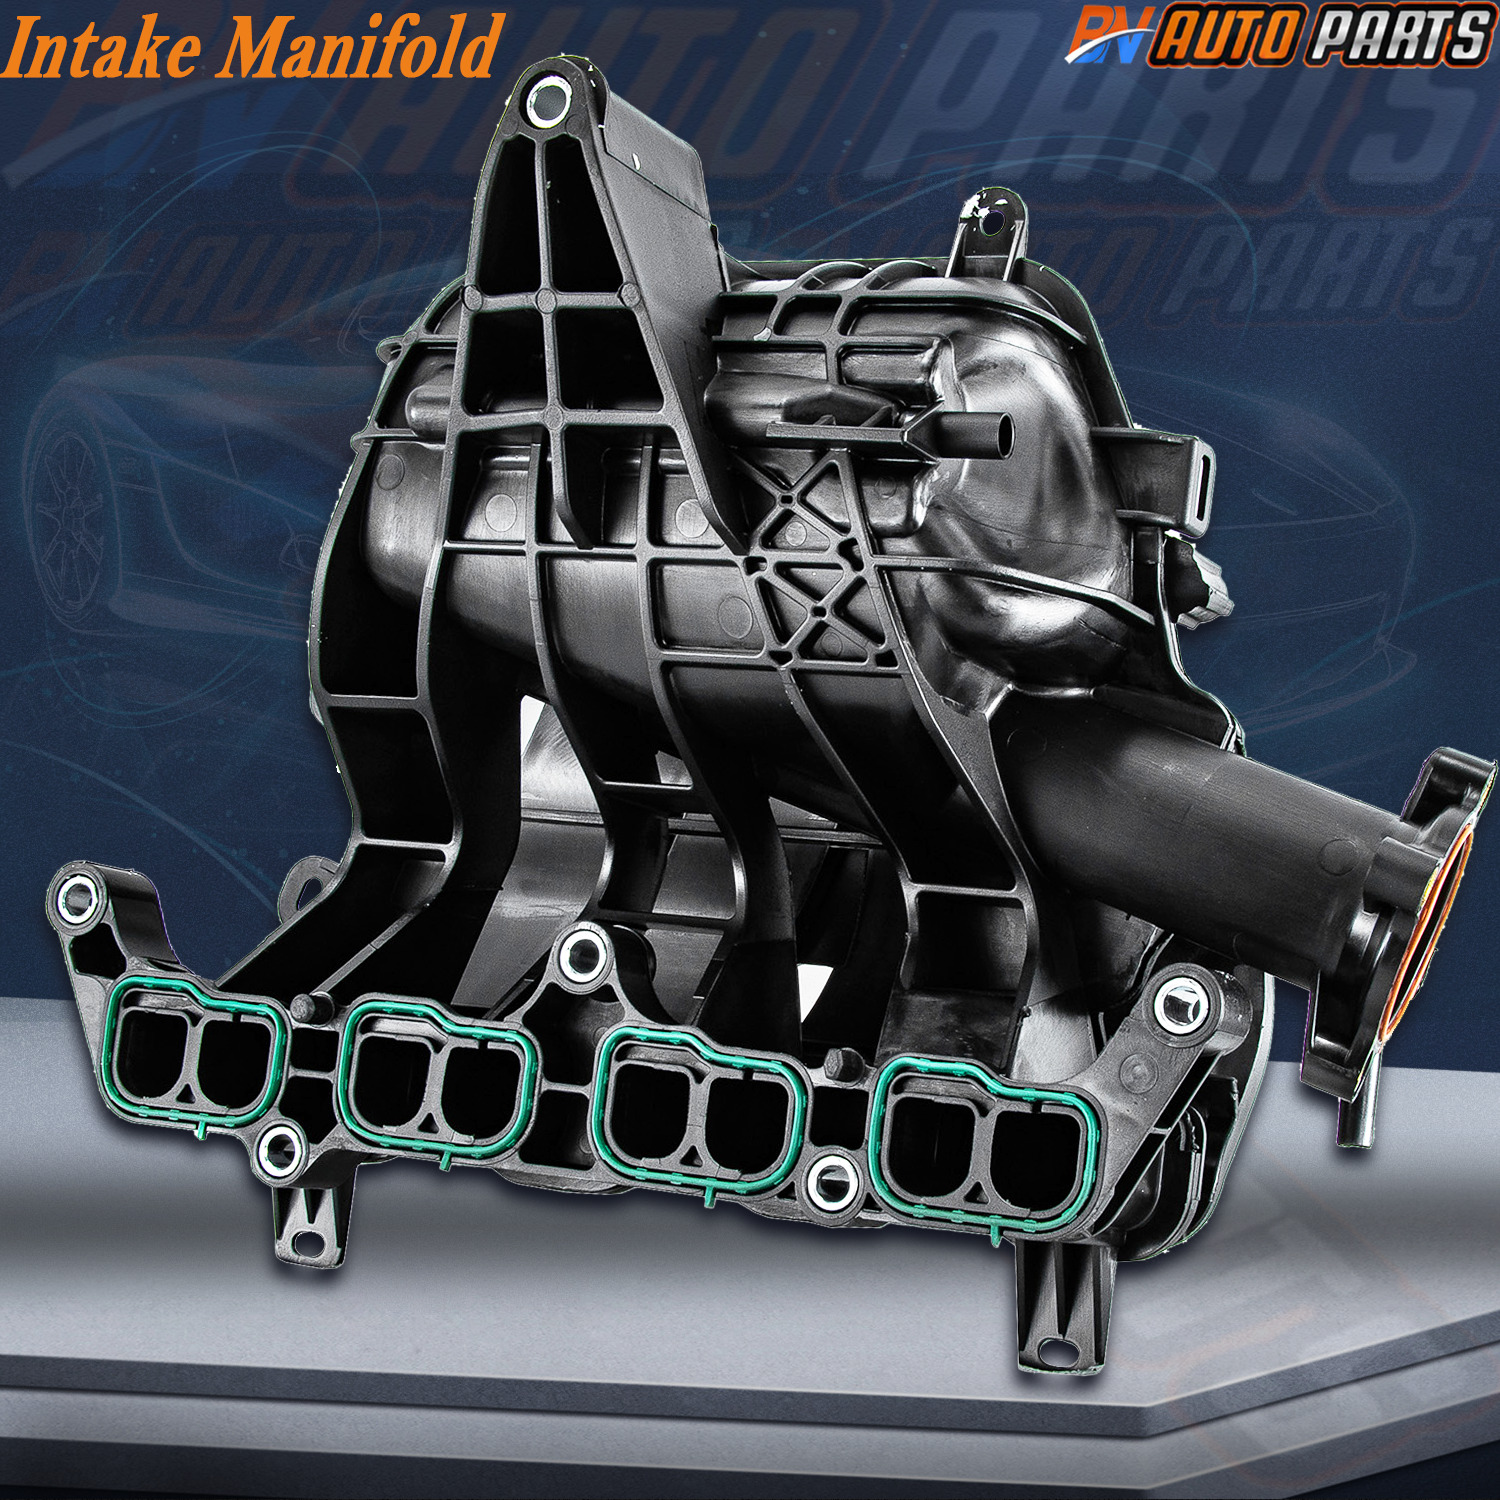 Intake Manifold For 2019-2020 Toyota Yaris / Yaris iA 17-18 / 16 Scion iA 1.5L